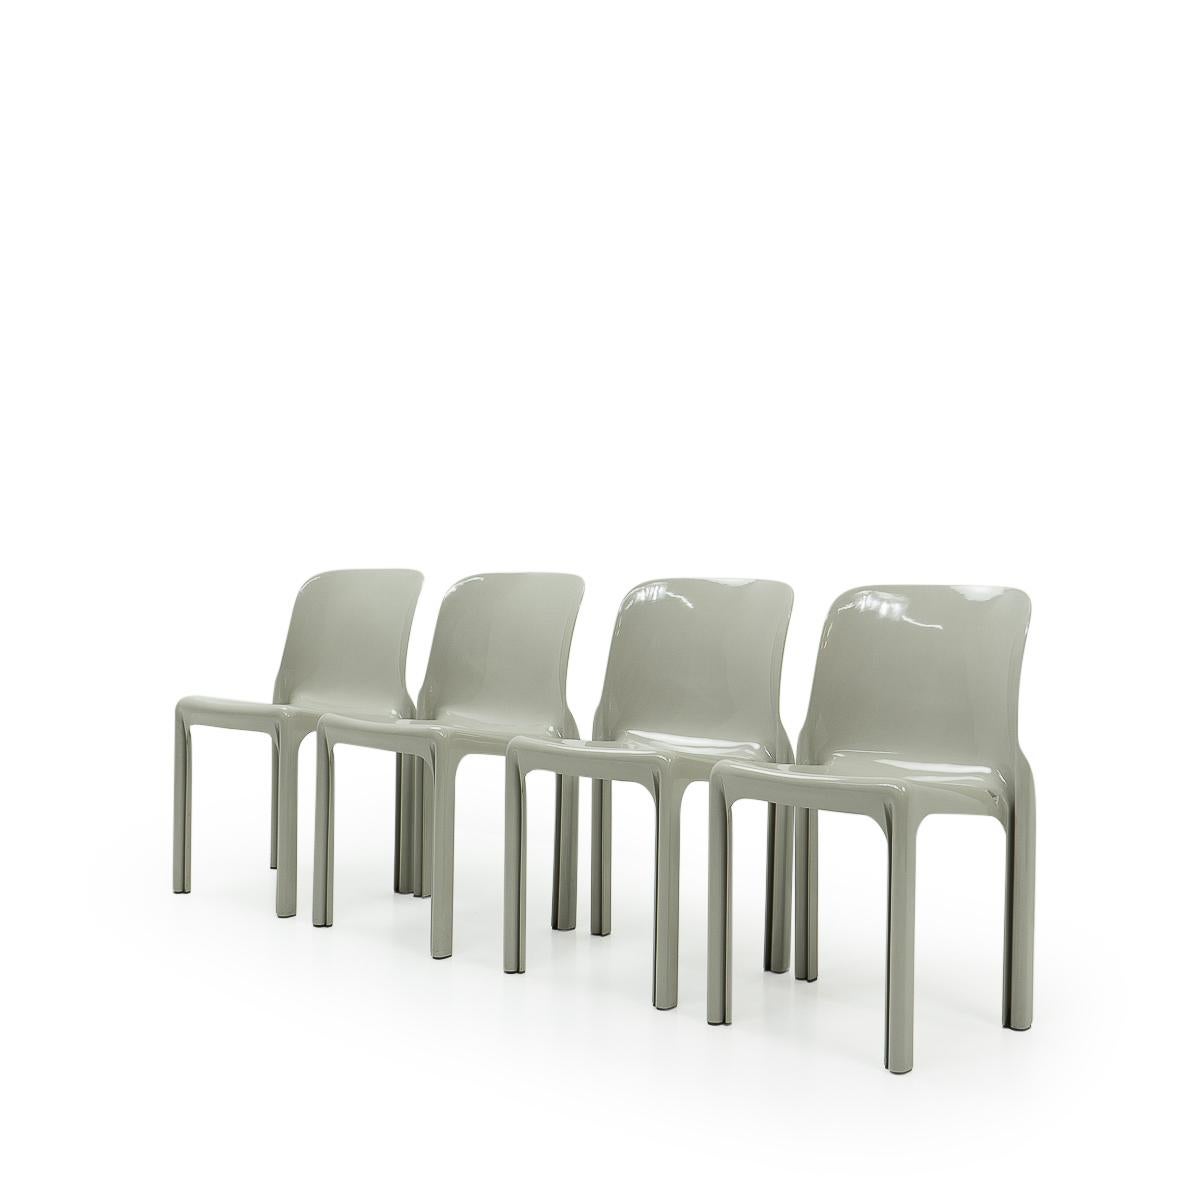 Der Stuhl Selene wurde in den 1960er Jahren von Vico Magistretti entworfen und ist im MoMA New York ausgestellt.

Ursprünglich: Italien, 1960er Jahre. Produziert von Artemide.

Zustand: Vintage By Zustand. Keine Reparaturen, Stühle sind alle